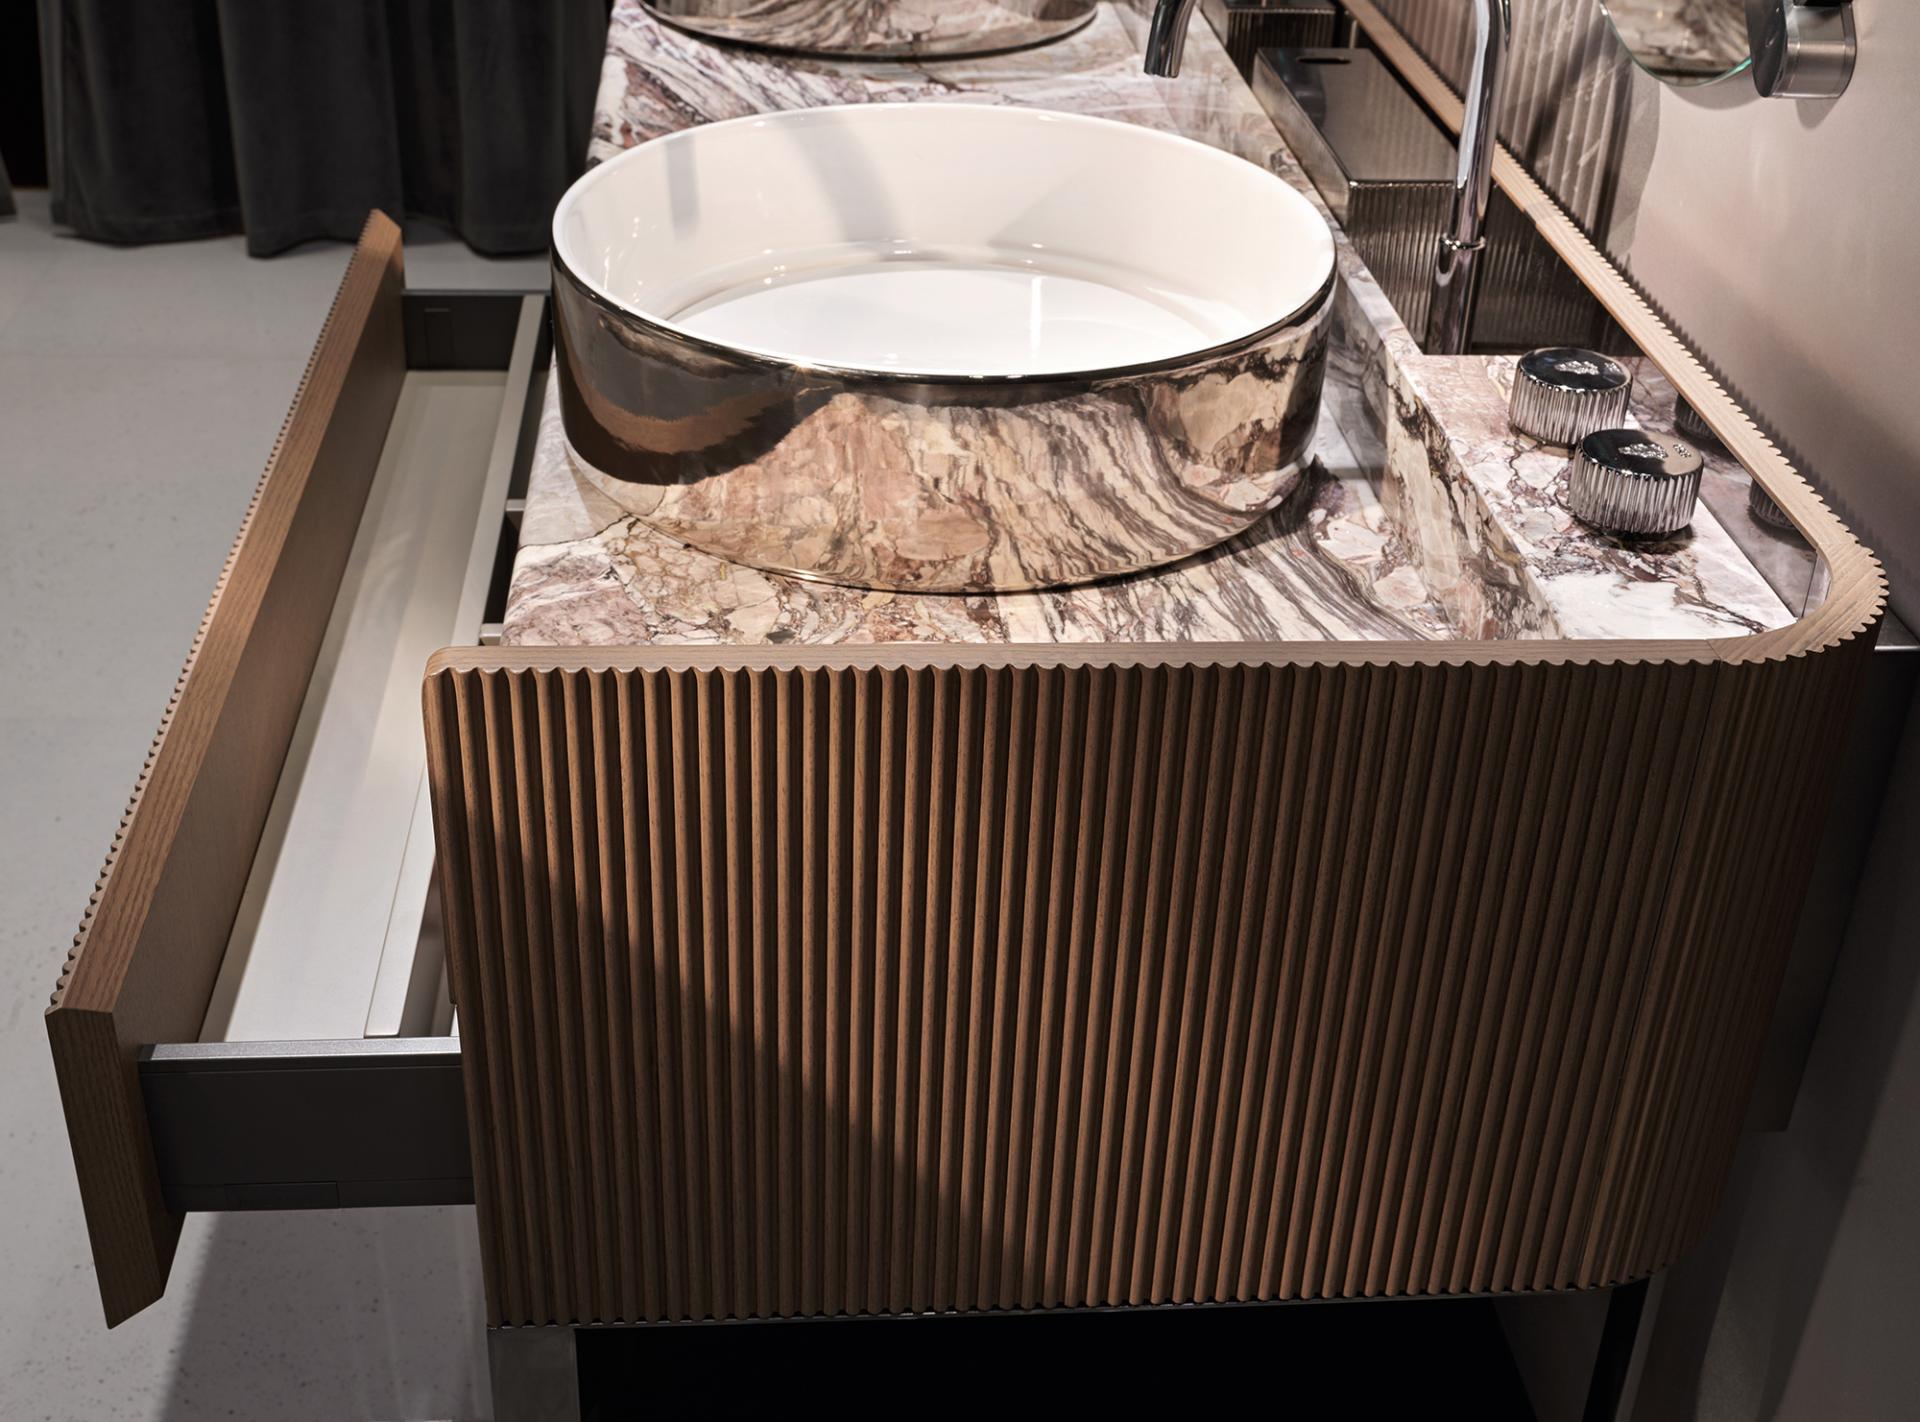 Ванная комната Kobol anniversary, дизайн Visionnaire Home Philosophy